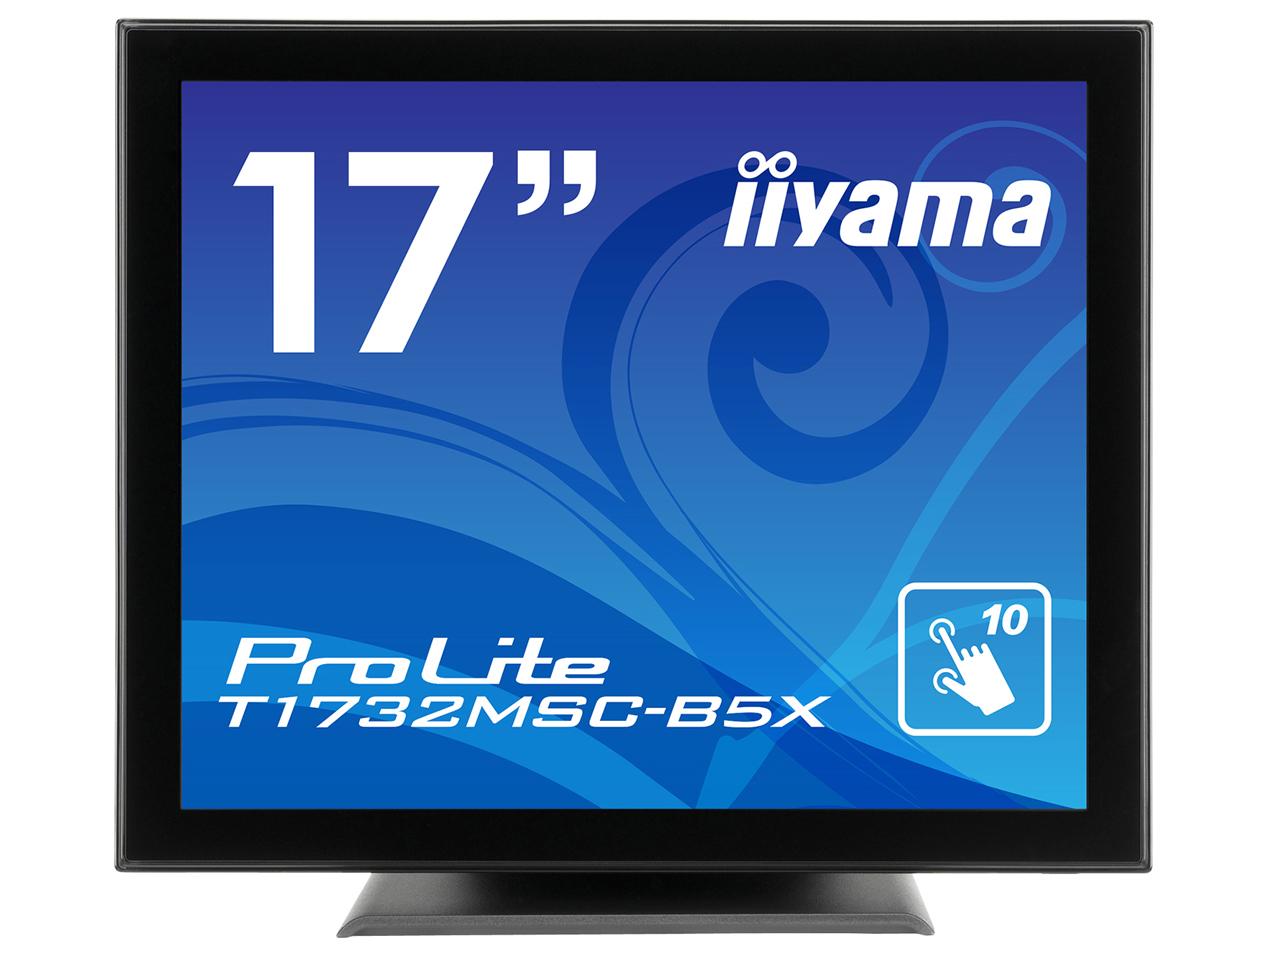 ProLite 17^ fBXvC A`OA Ódeʕ HDMI DisplayPort ho hH IP54(T1732MSC-B5X)